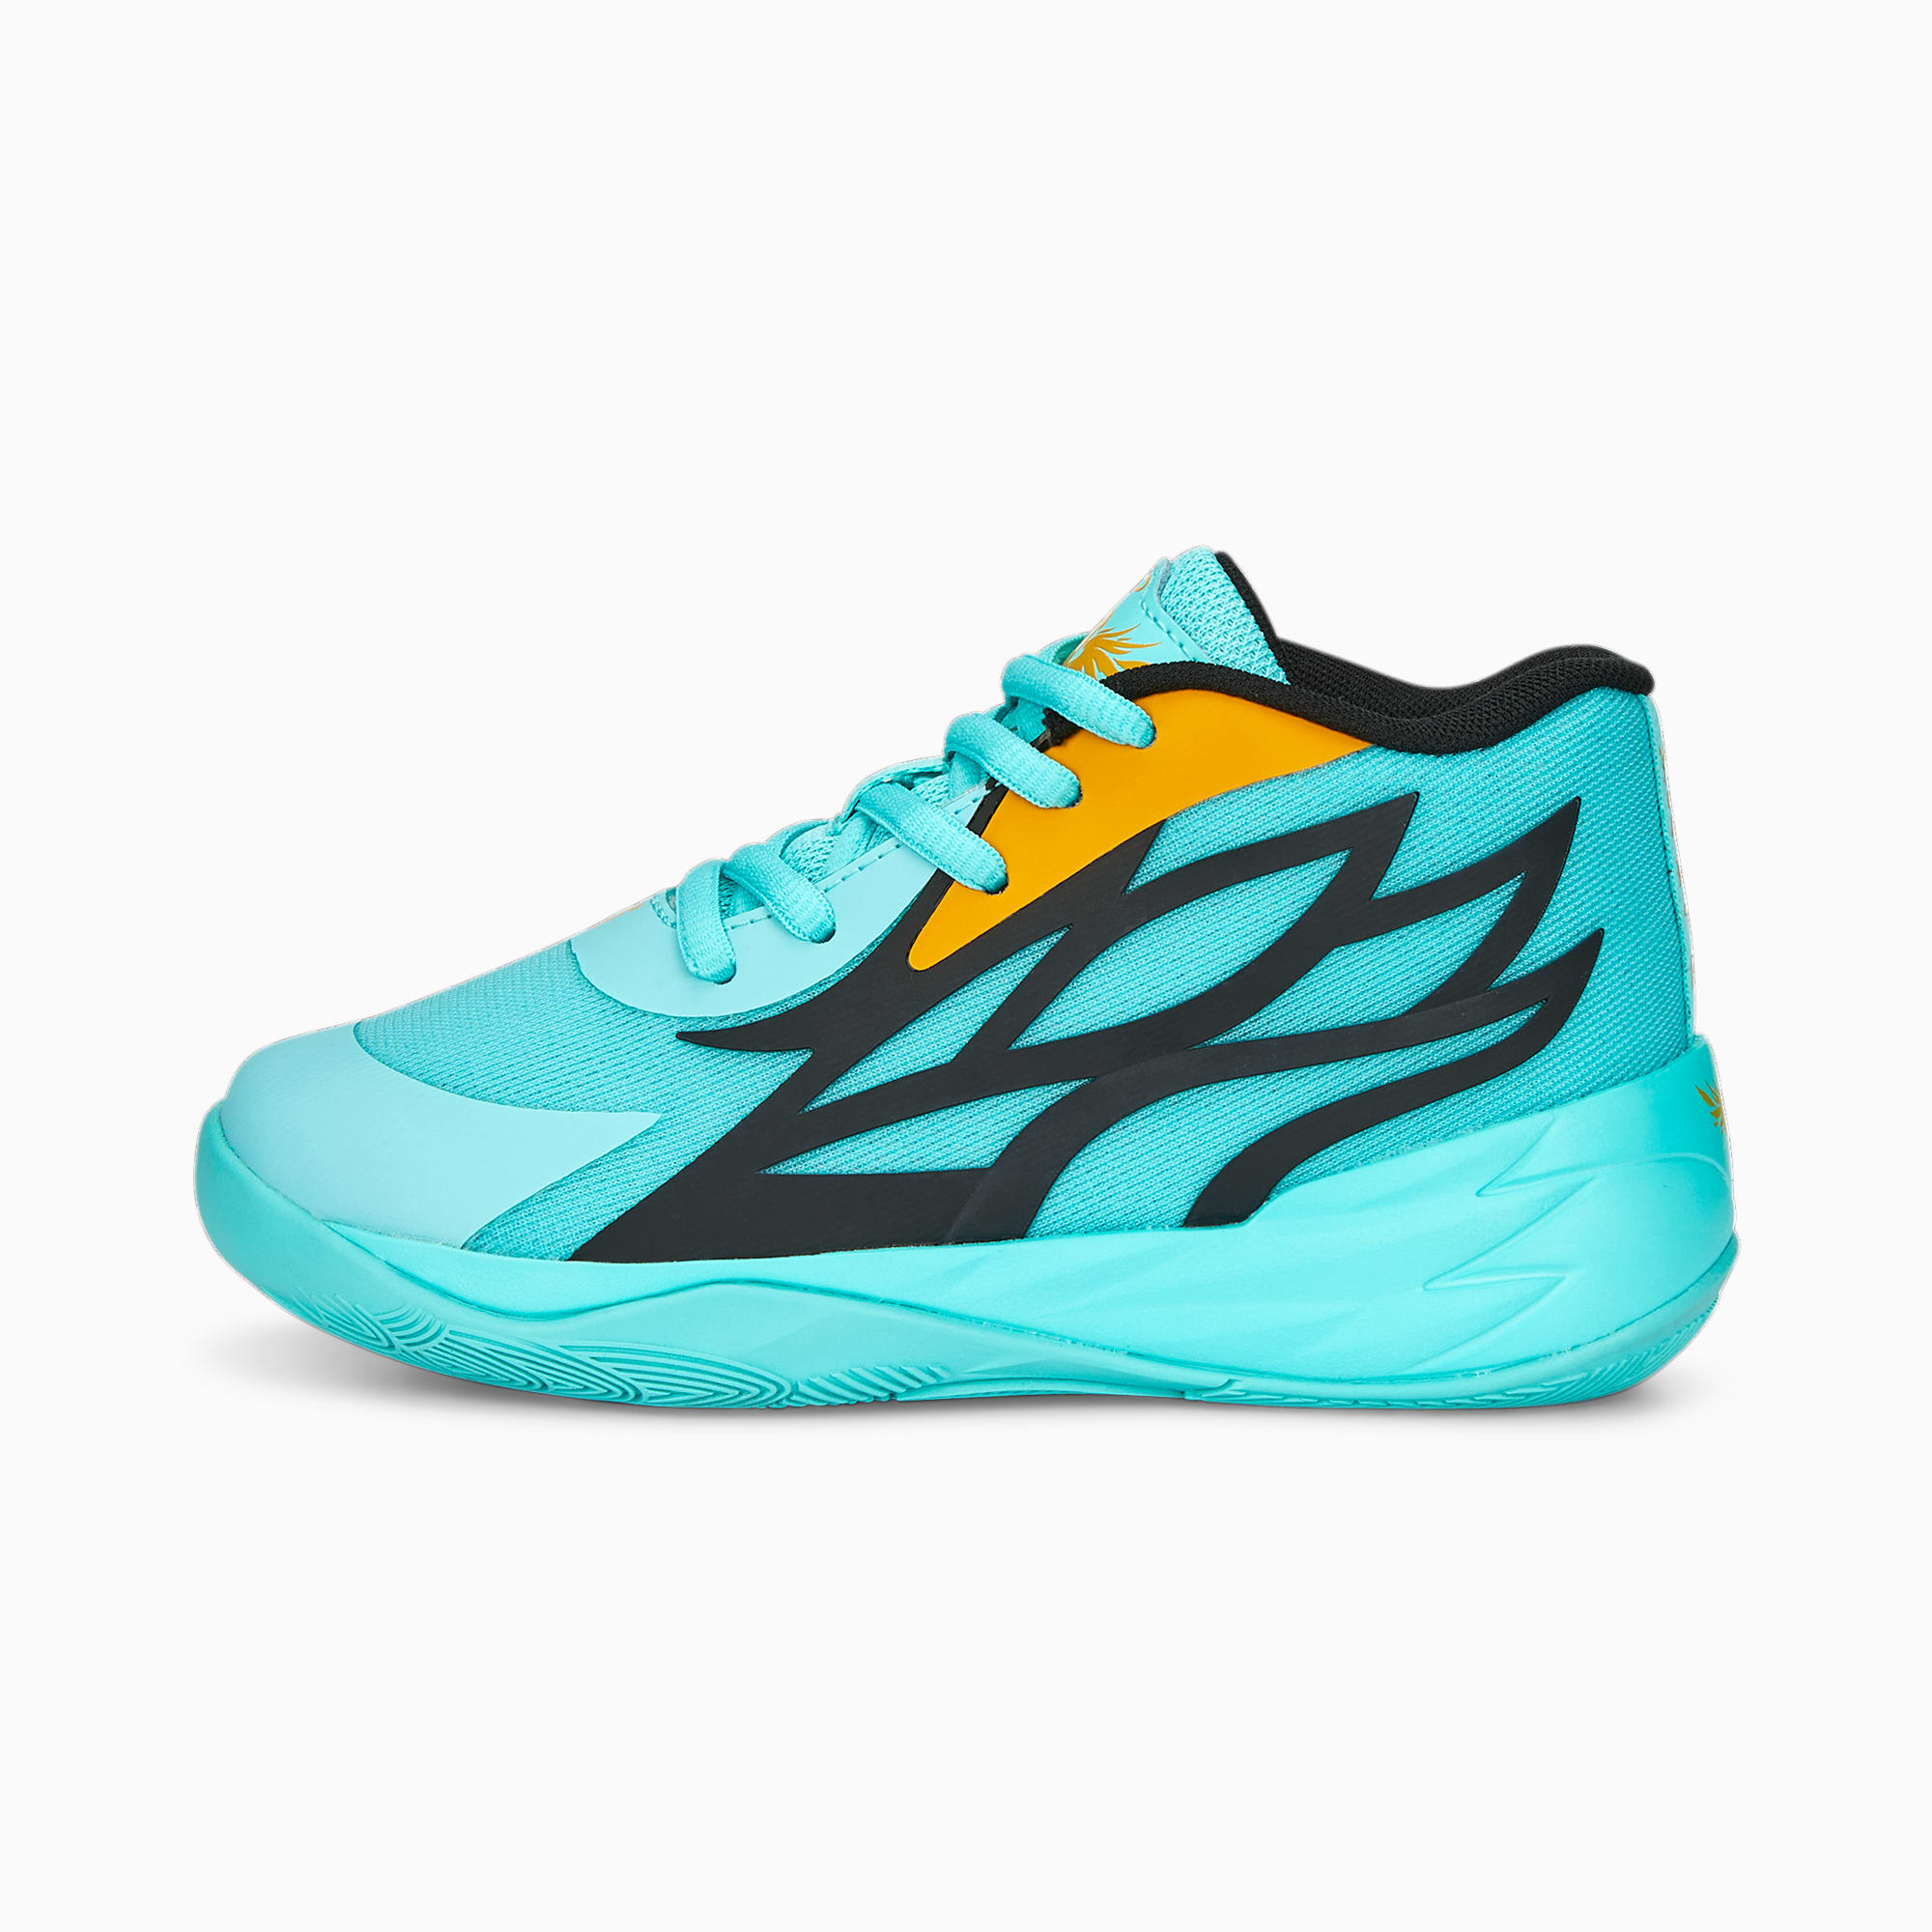 MB.02 Basketball Shoes - Kids 4-8 years | Elektro Aqua-PUMA Black ...